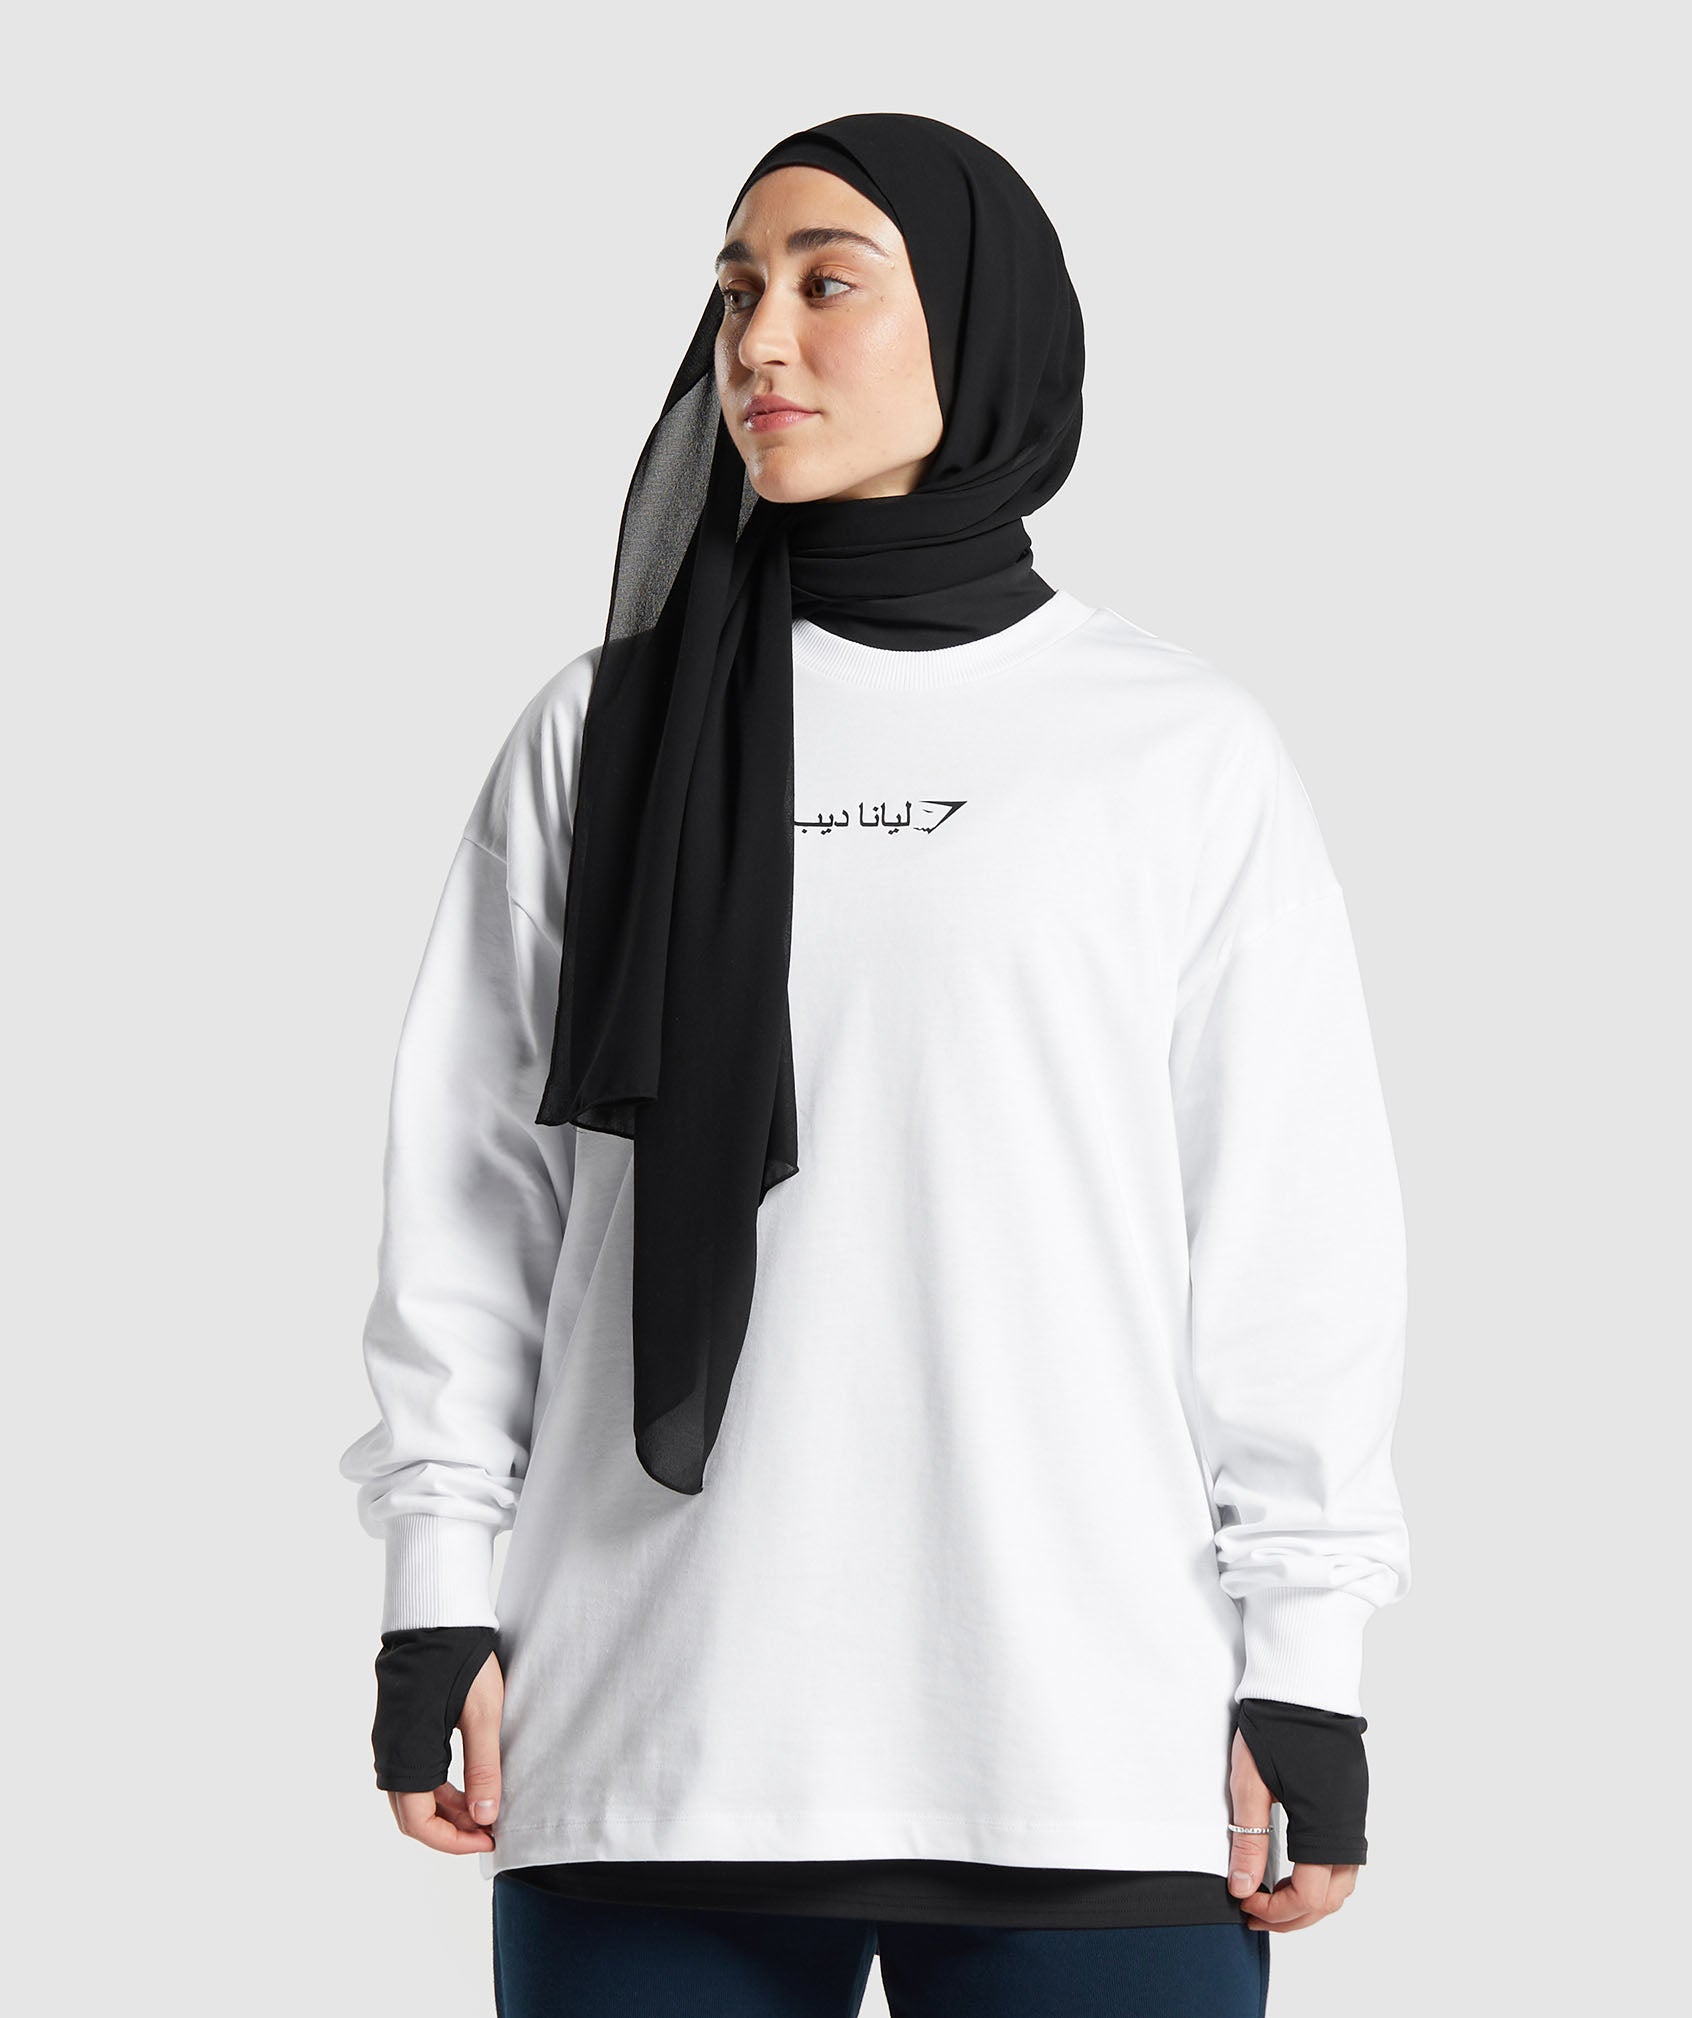 GS X Leana Deeb Oversized Long Sleeve Top dans Whiteest en rupture de stock